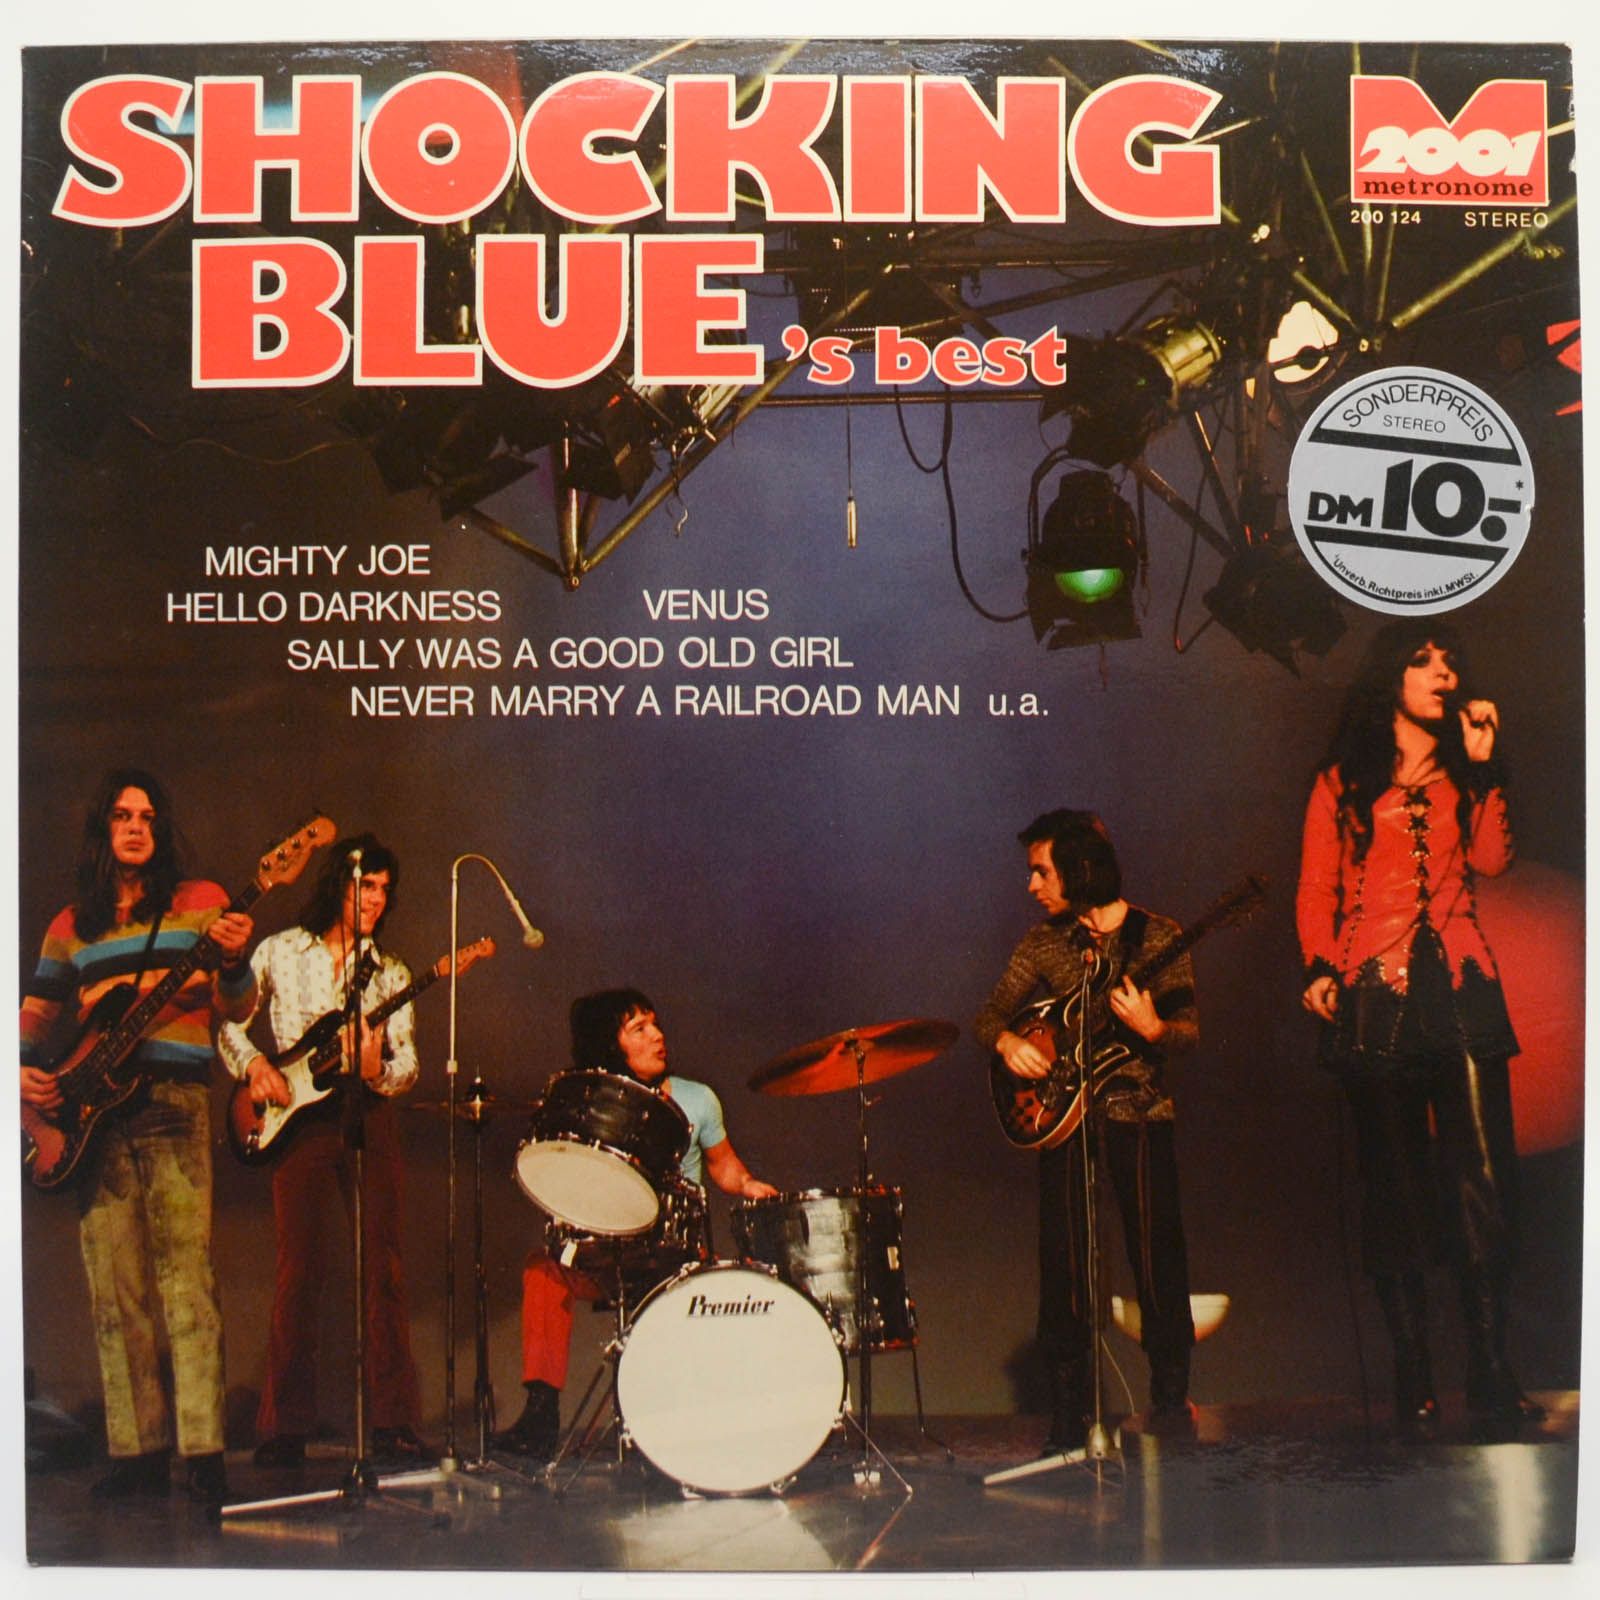 Shocking Blue — Shocking Blue's Best, 1970